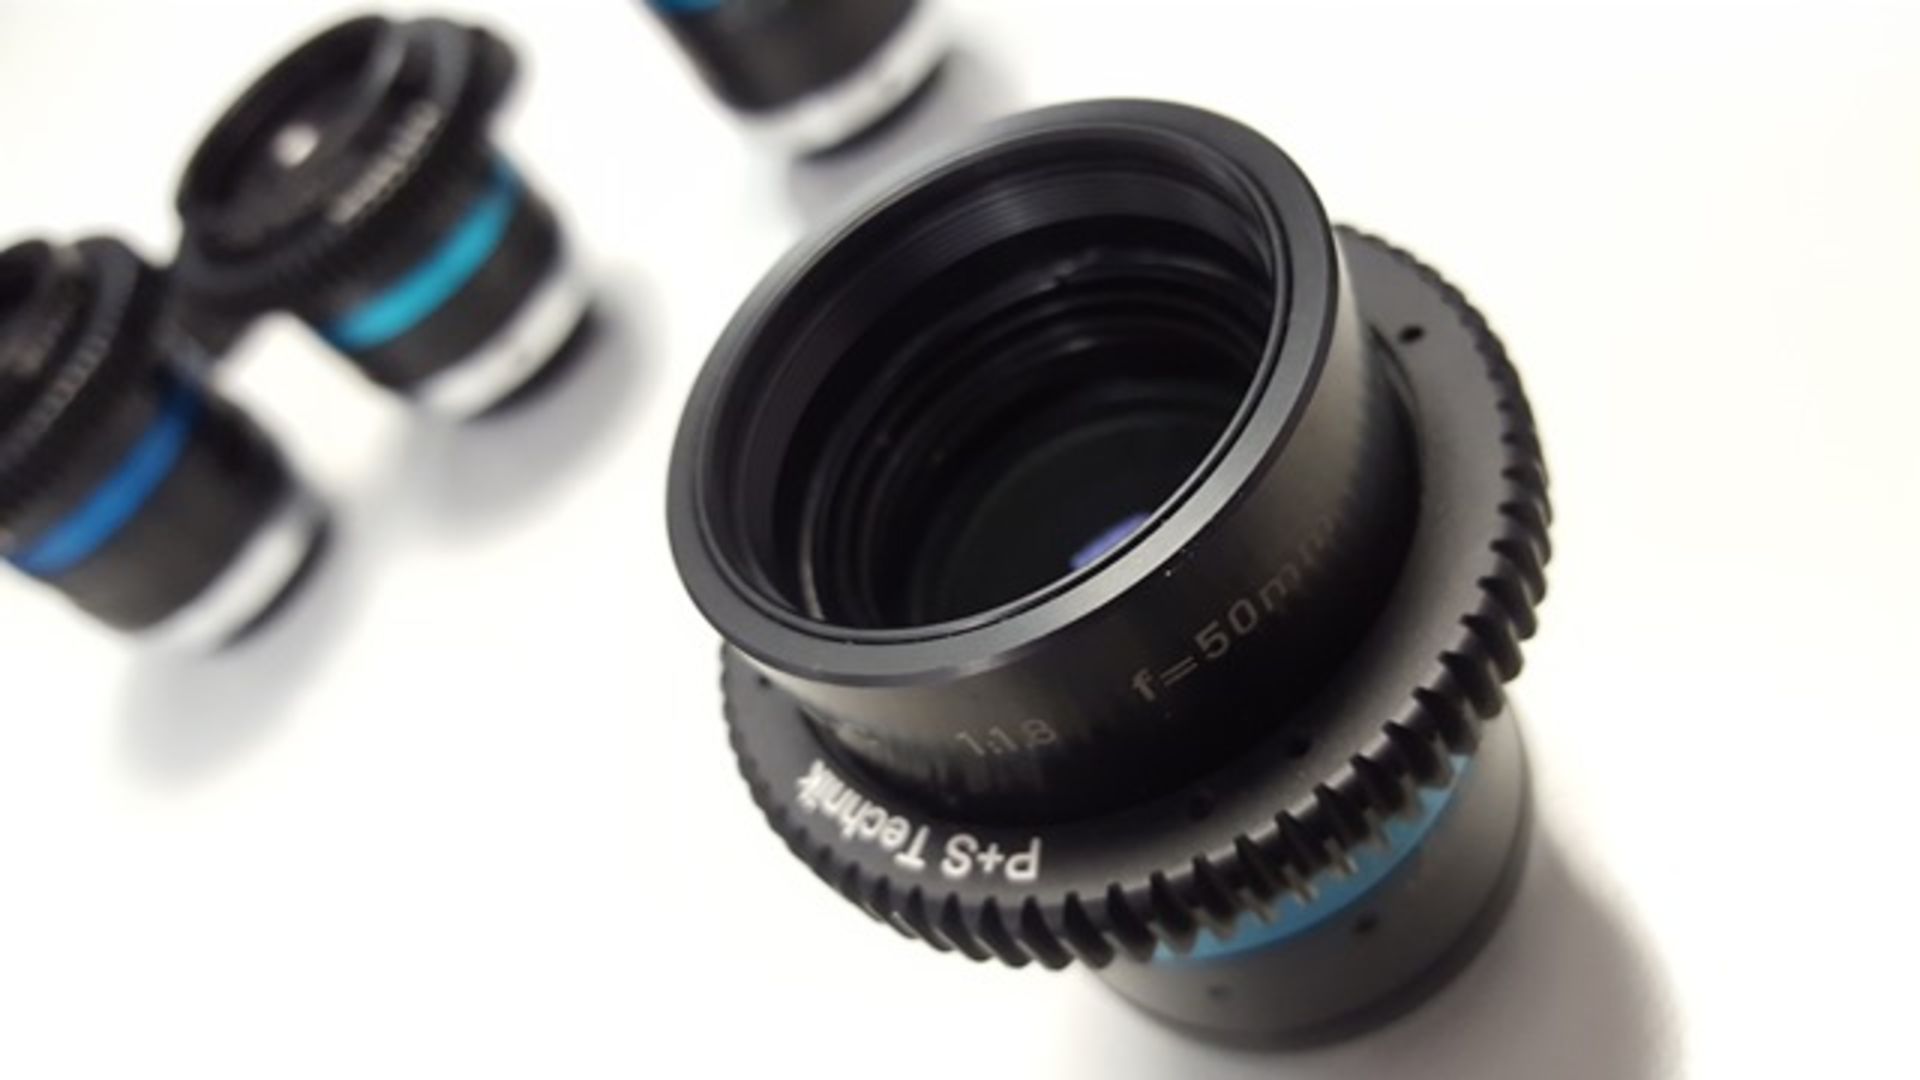 Set of Linos C Mount Lenses c/w P&S Technik Focus Rings 12mm s/n 11856562, 16mm s/n 11943224... - Image 6 of 6